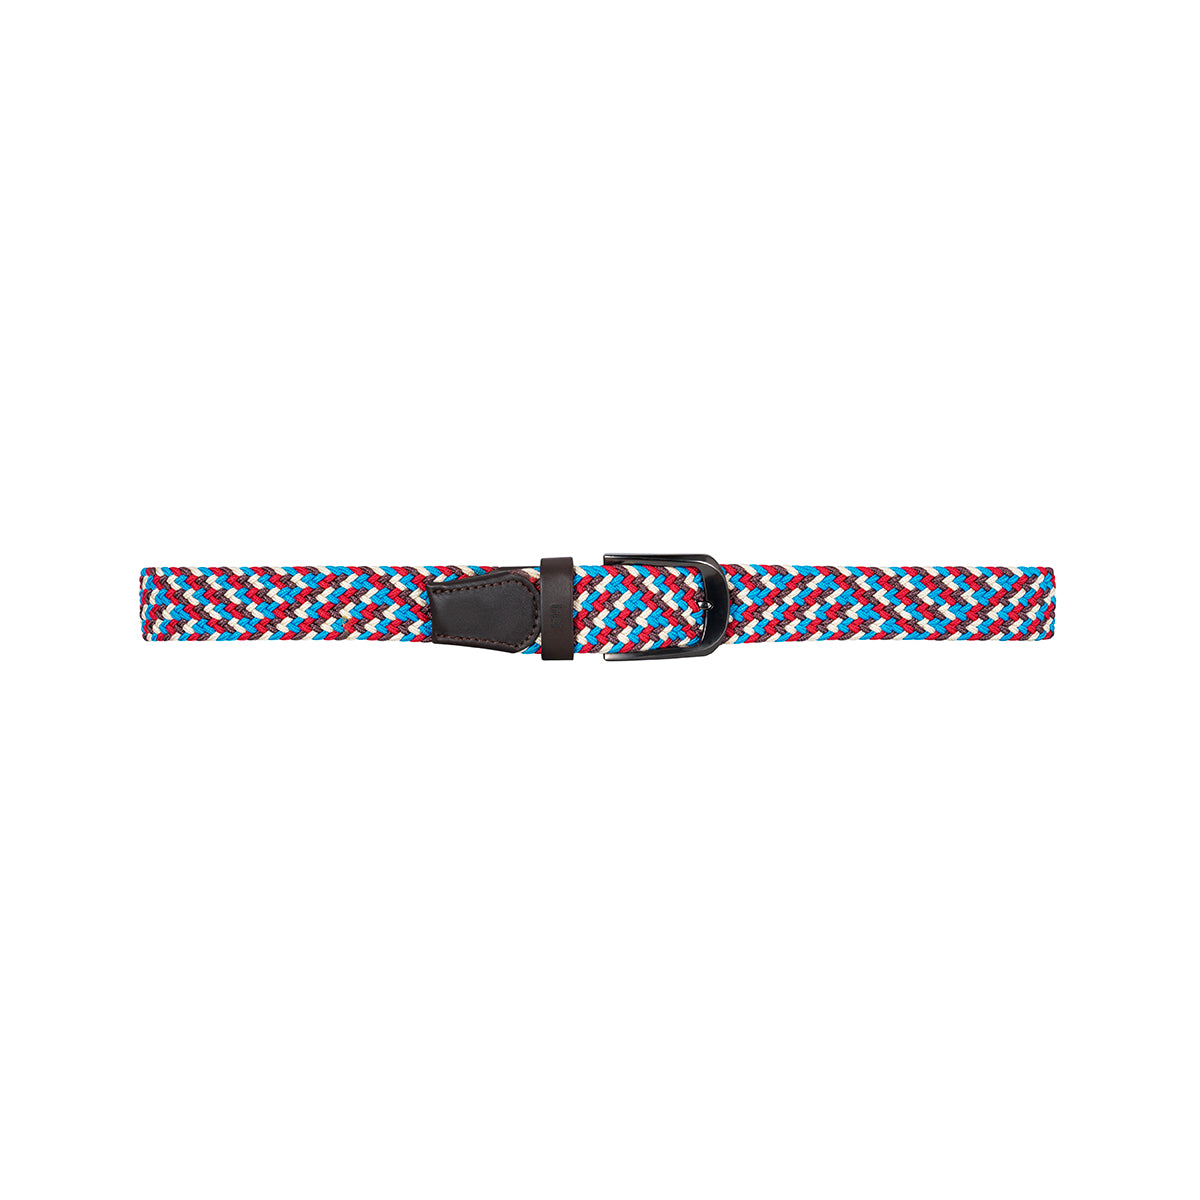 Cinturón trenzado elástico Azul Rey/ Café/ Rojo/ Blanco